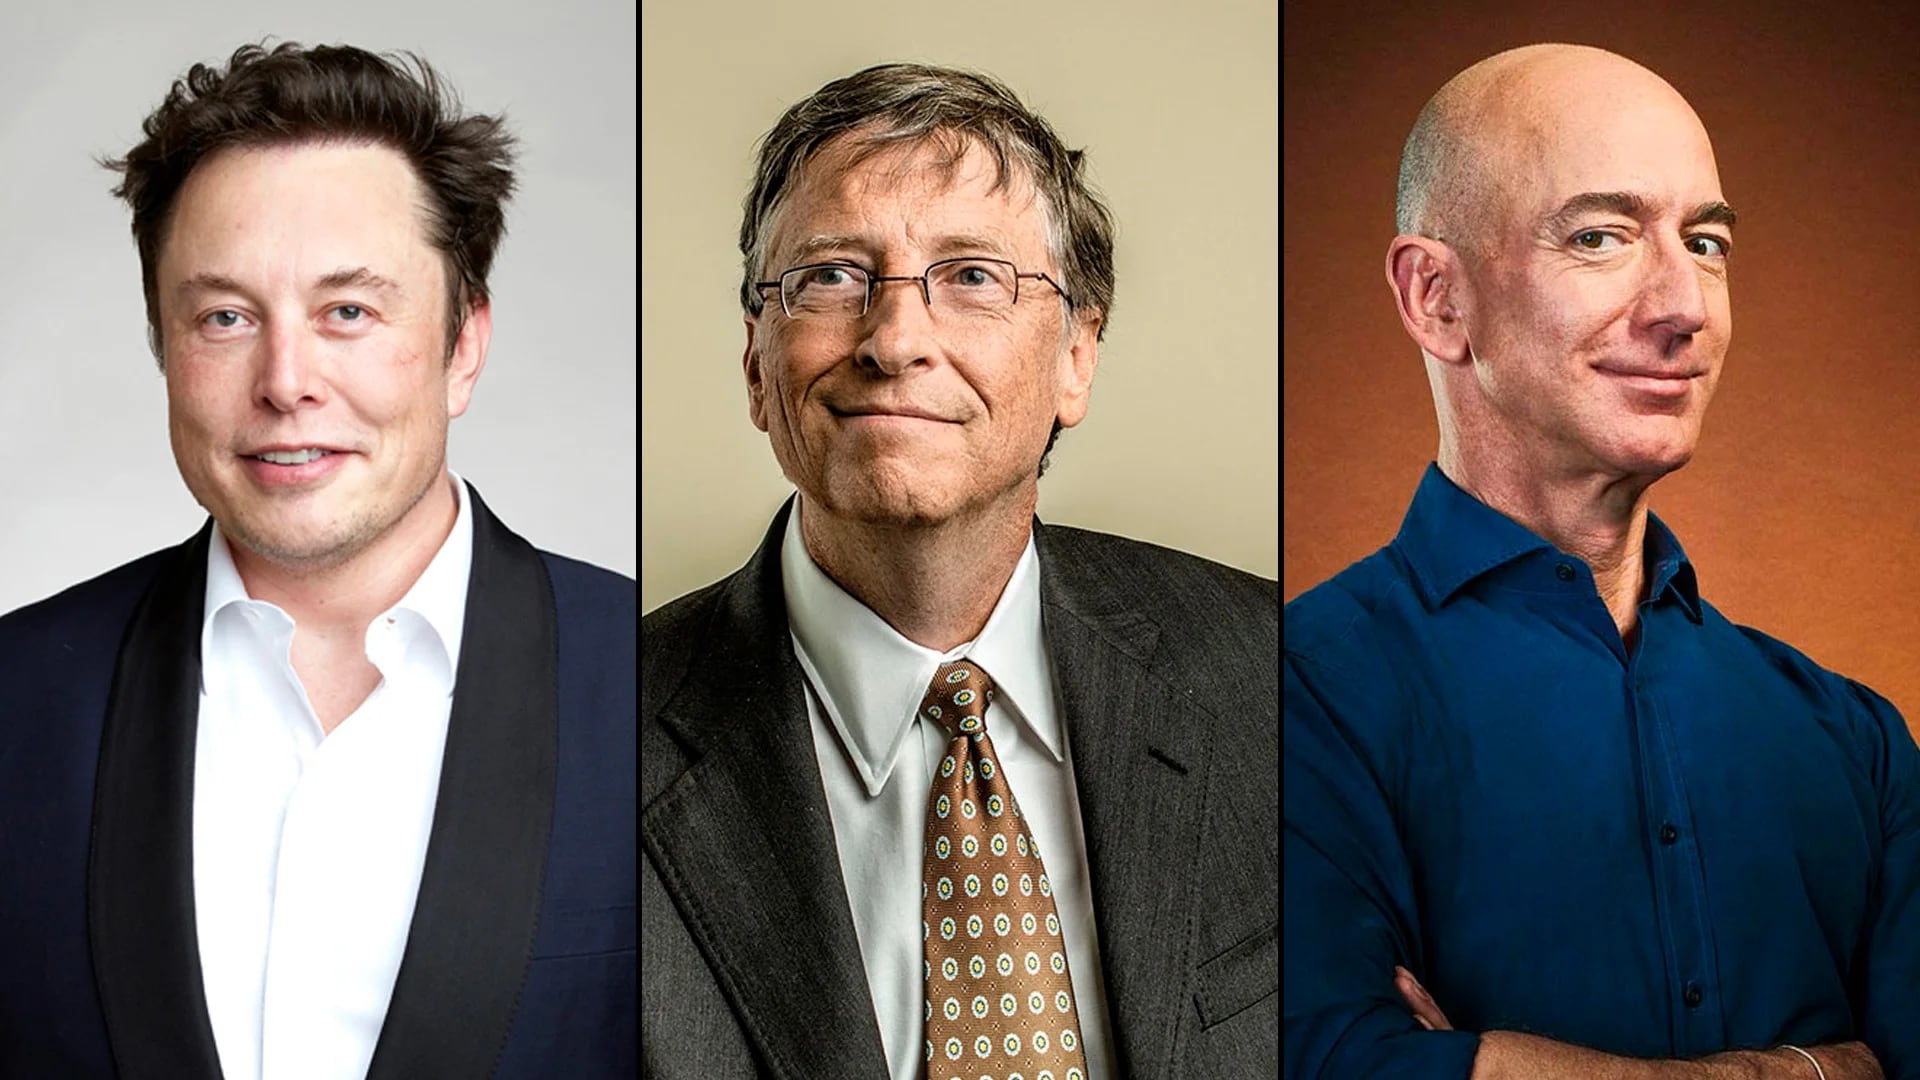 Cuáles son las empresas de tecnología de Musk, Gates y Bezos, los hombres más ricos del mundo